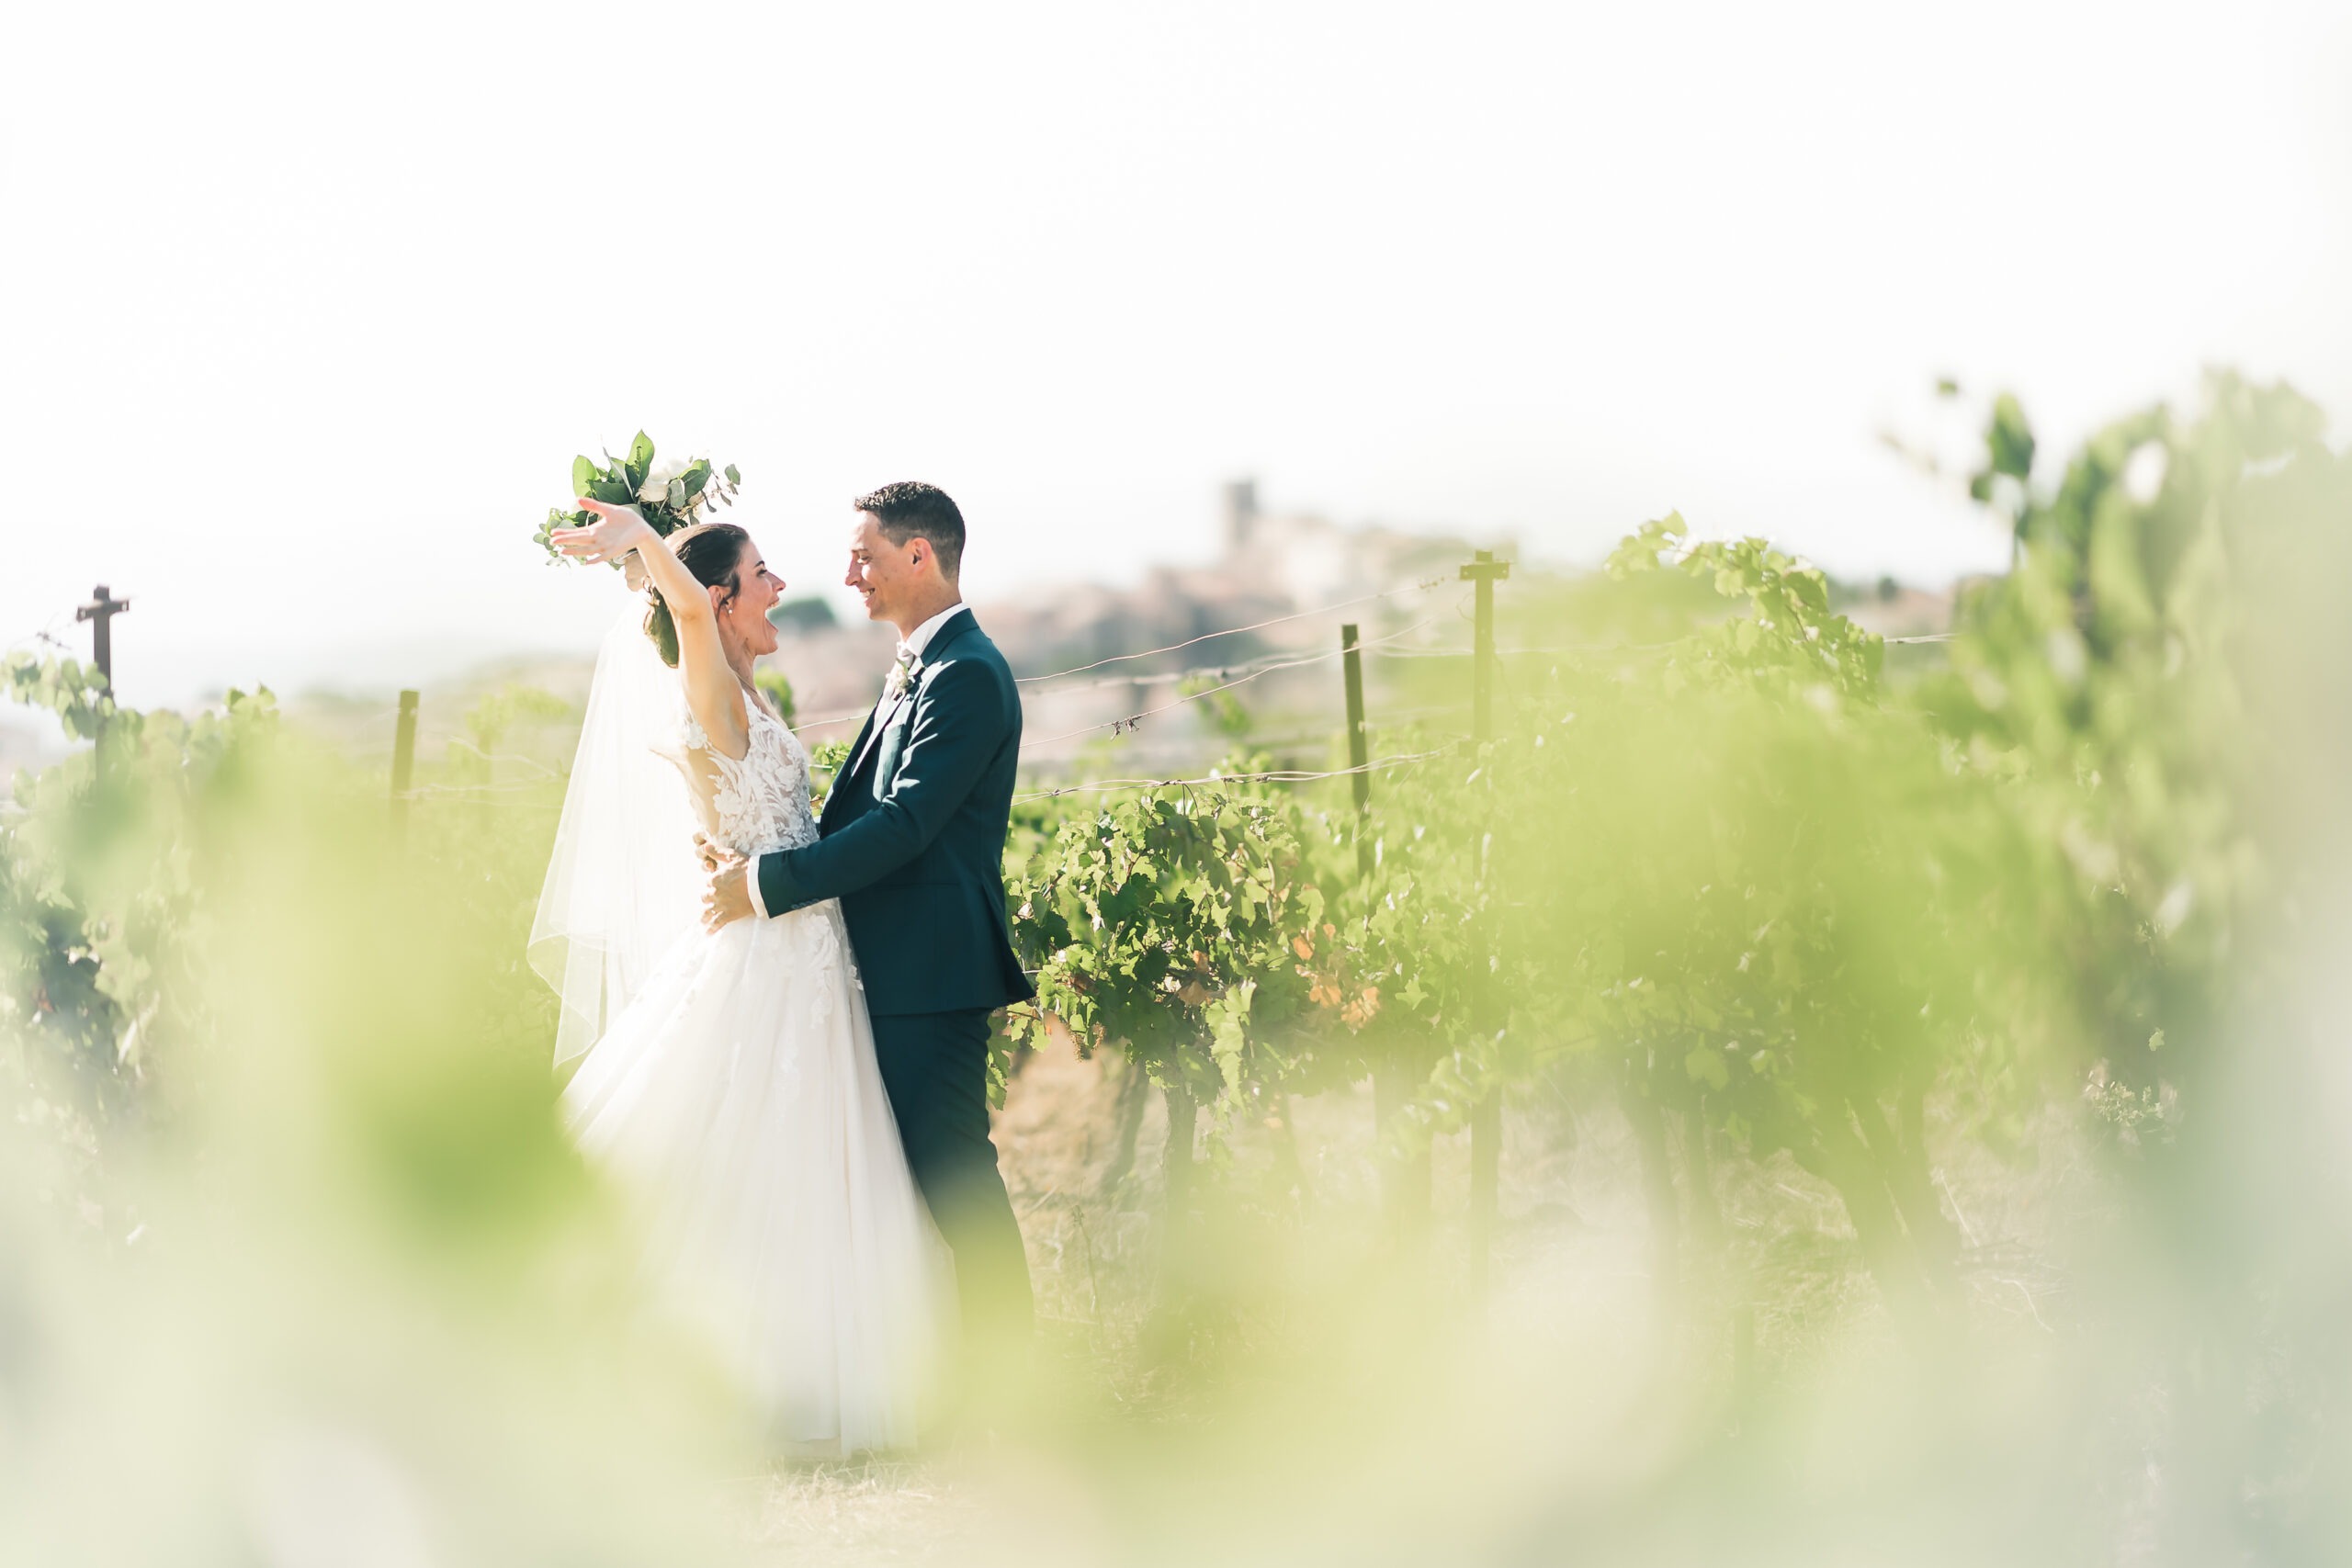 Mes prix photographe mariage pour un couple de mariés se découvre dans le bonheur le plus total dans les vignes. Un moment capturé dans l'action par le photogrpahe mariage Alexandre Flury.